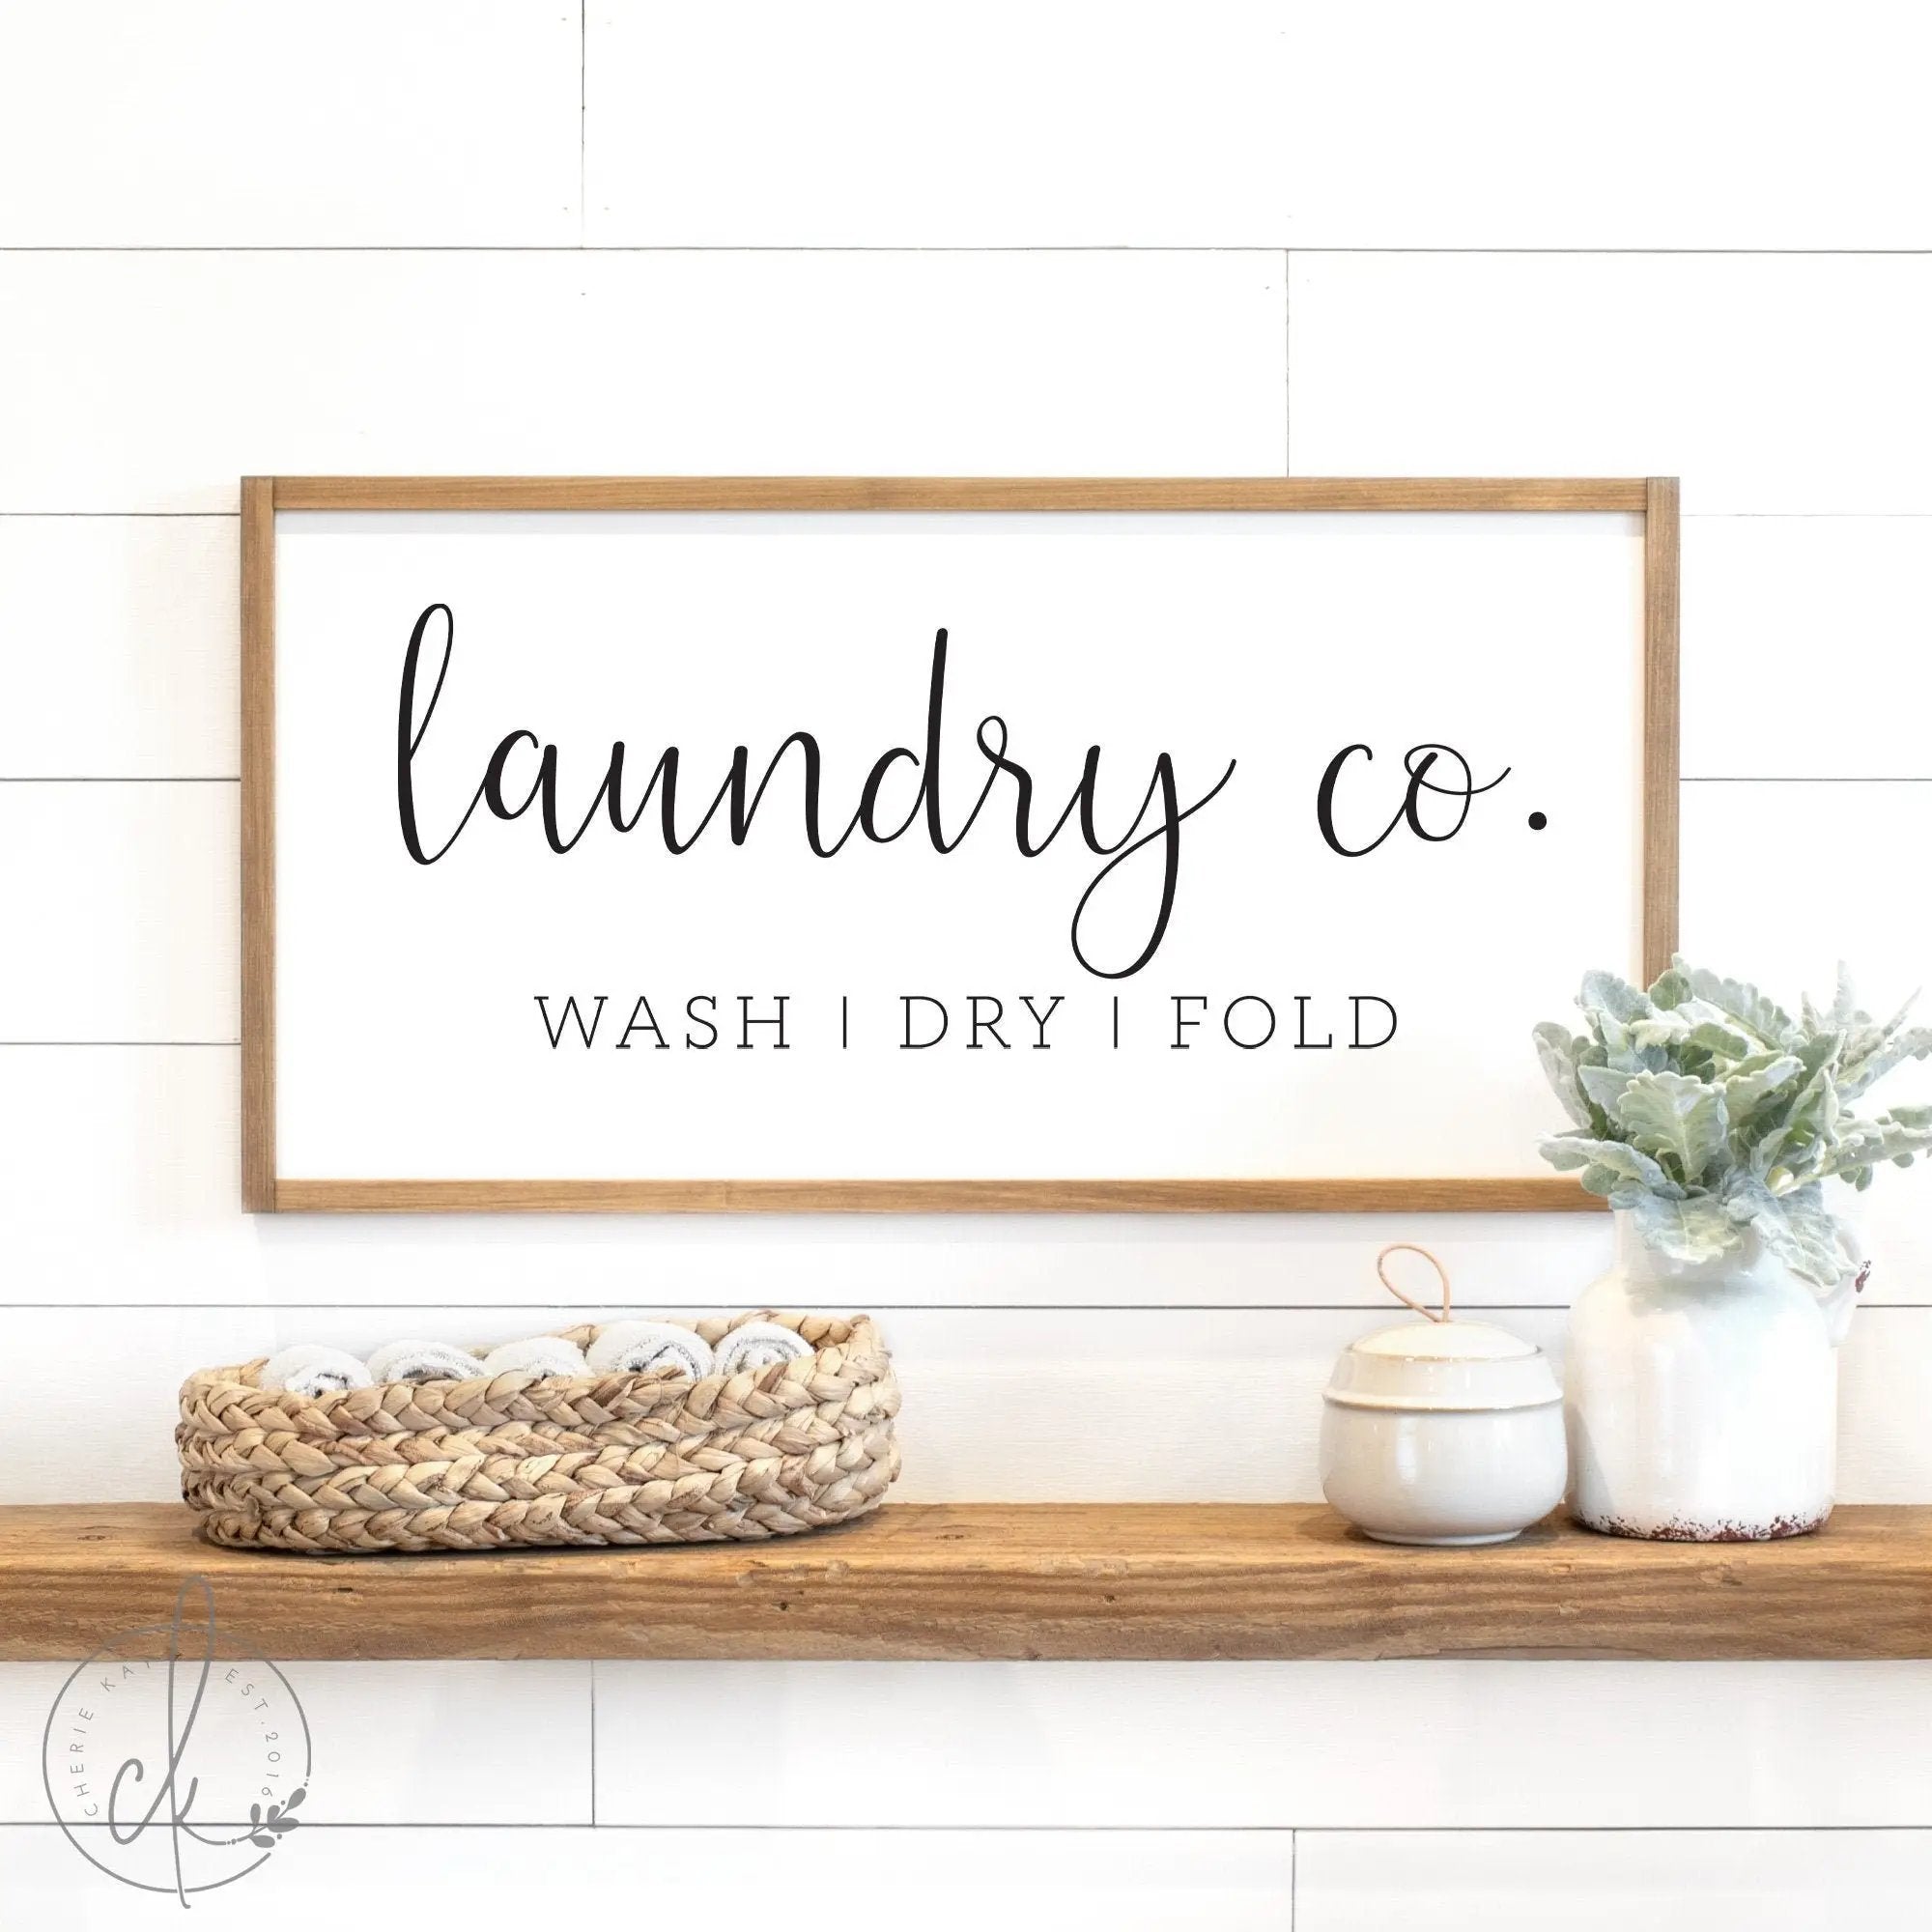 laundry sign | laundry co. sign | wash dry fold sign | laundry room sign | laundry room decor | laundry wall decor